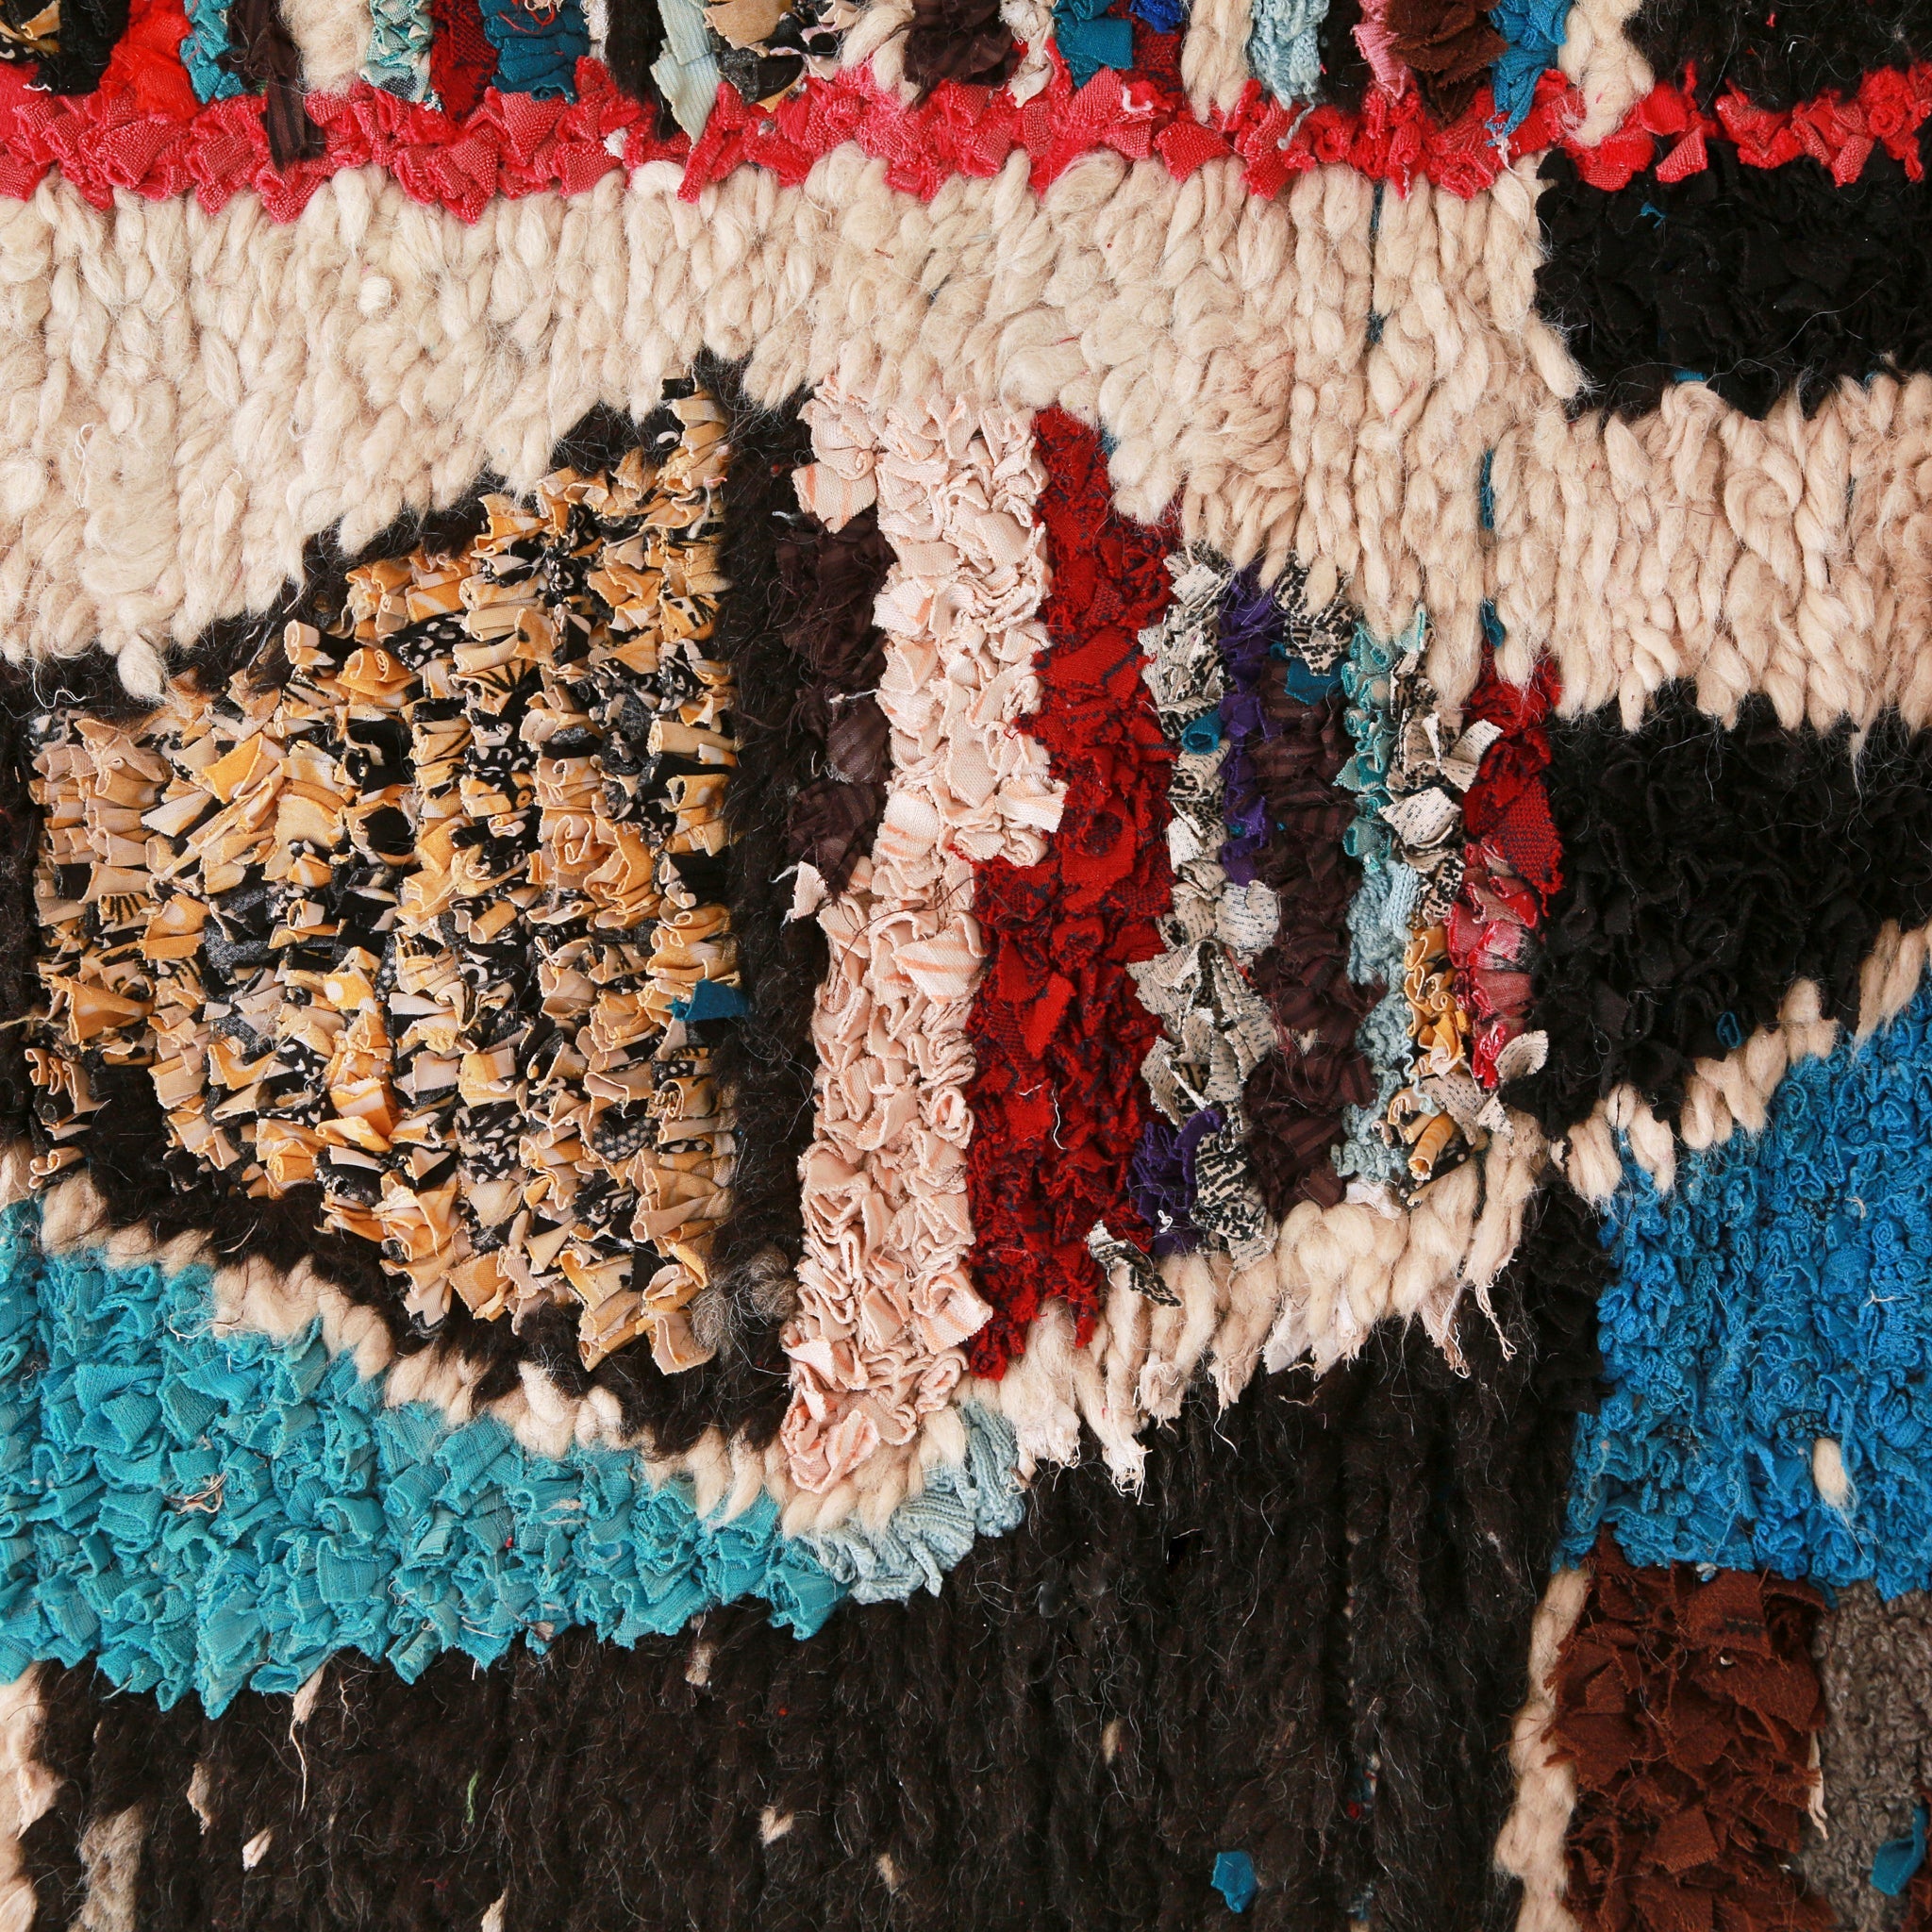 dettaglio di una figura geometrica che ricorda un triangolo formata da stracci di tessuto colorati, intorno della lana bianca e nera